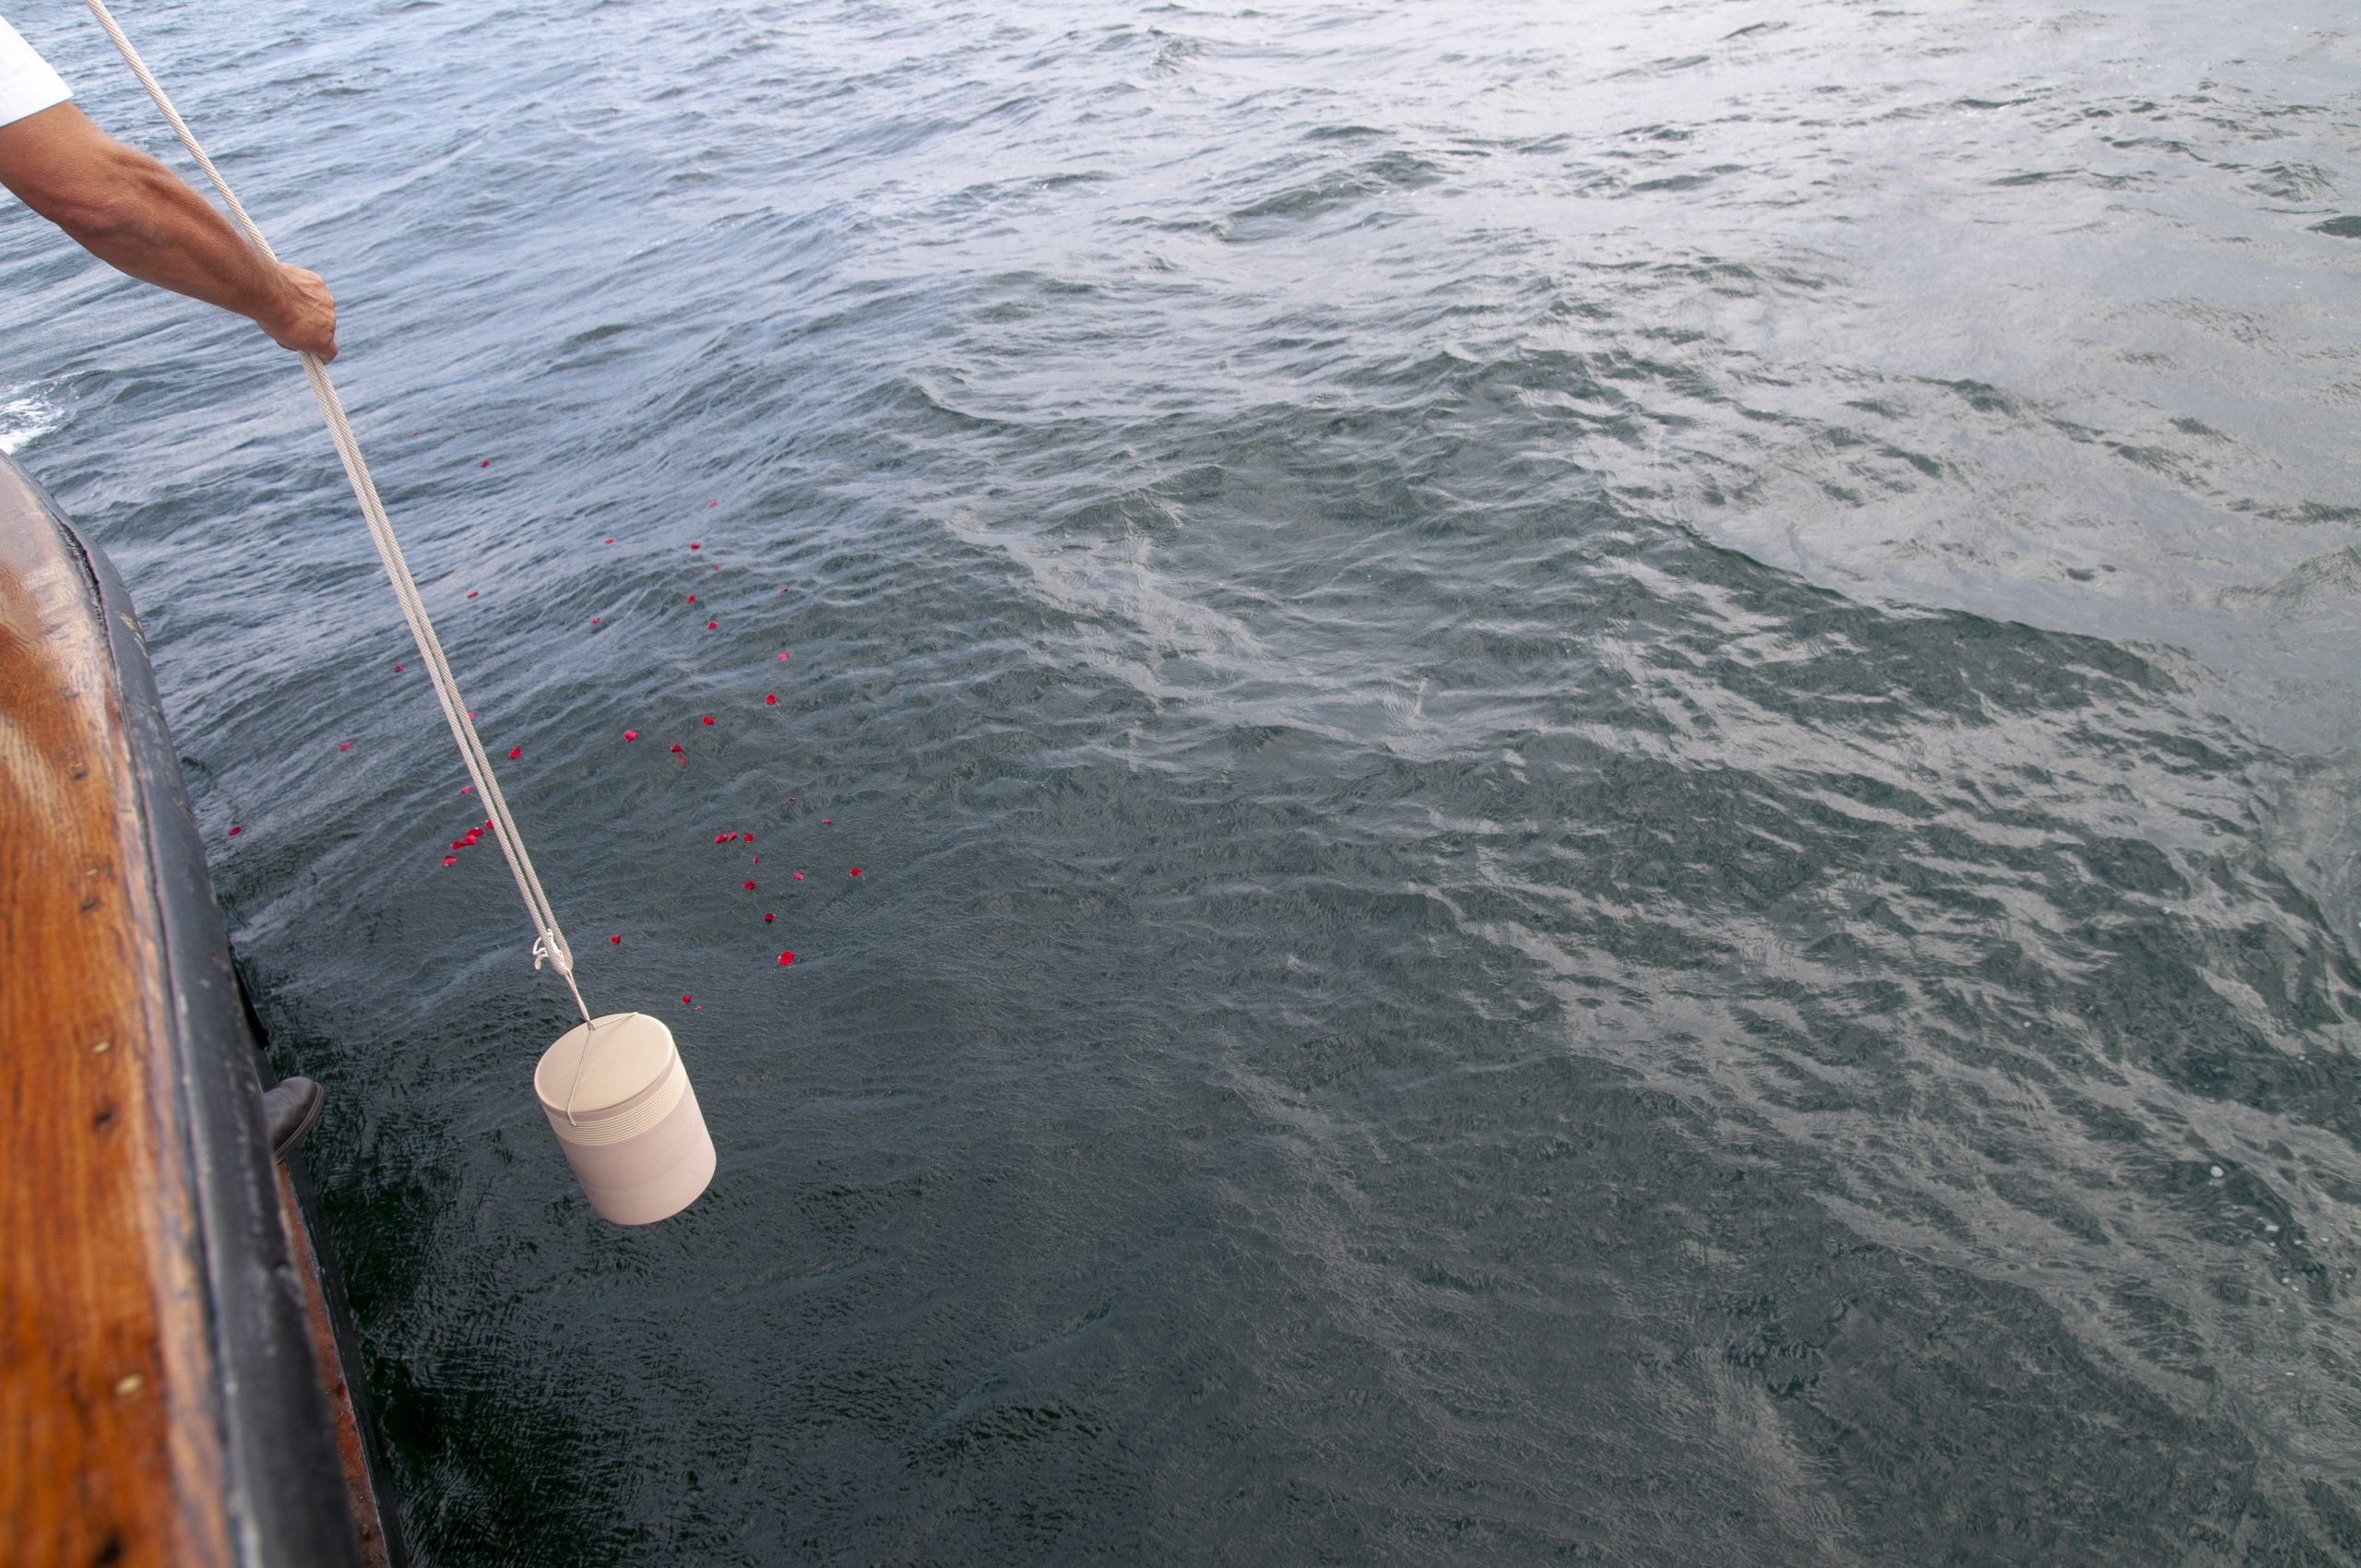 Bestattung auf hoher See, eine Urne mit den sterblichen Überresten wird dem Meer übergeben